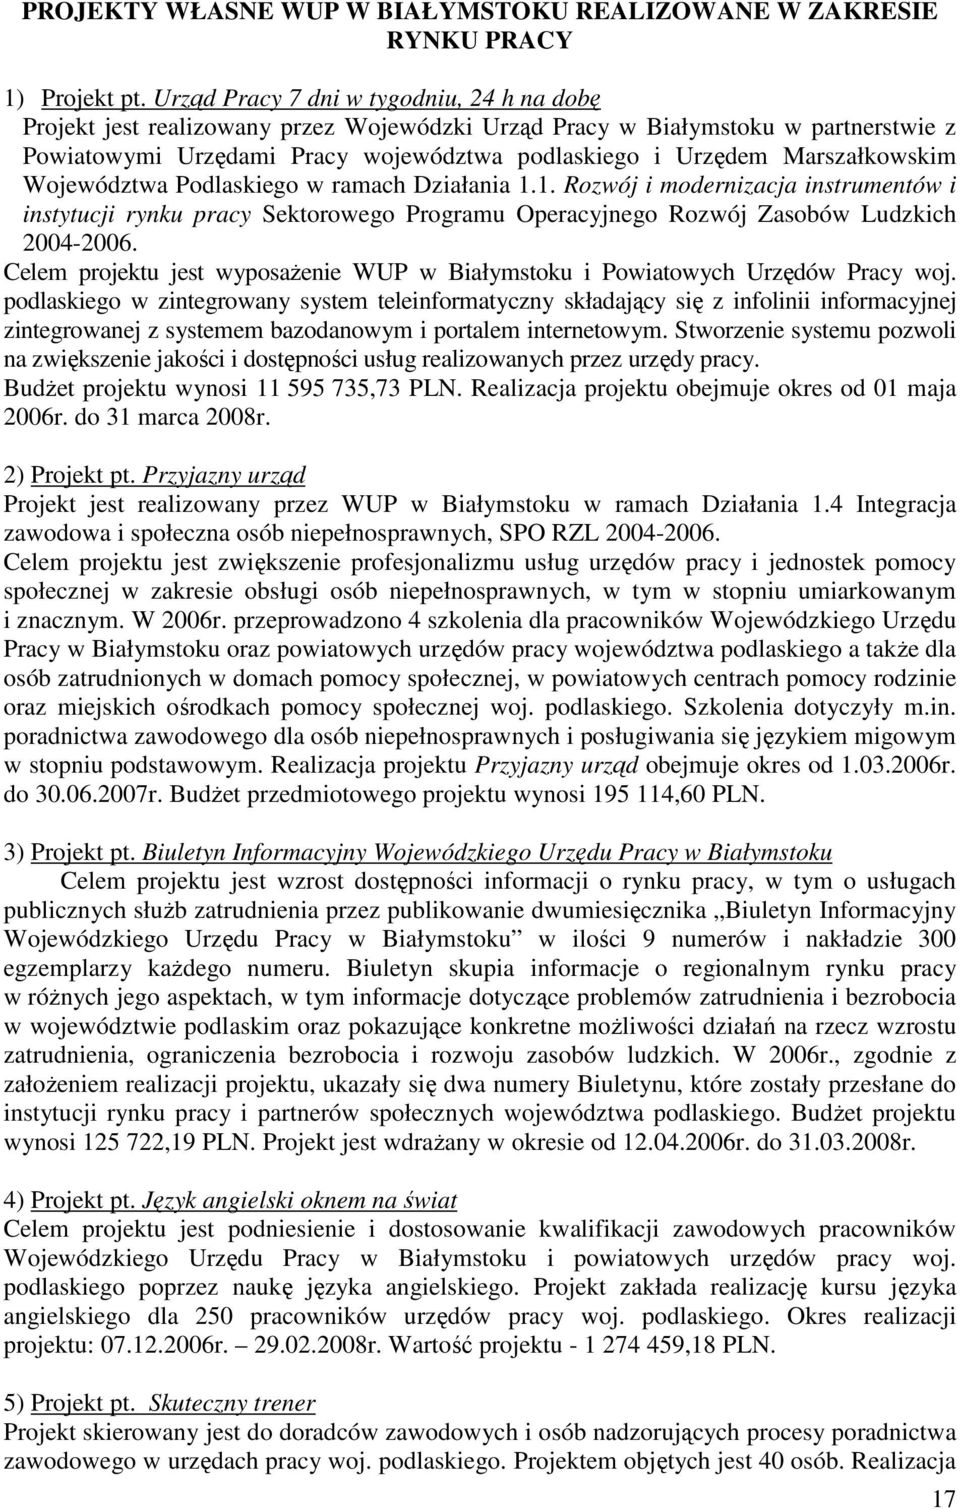 Marszałkowskim Województwa Podlaskiego w ramach Działania 1.1. Rozwój i modernizacja instrumentów i instytucji rynku pracy Sektorowego Programu Operacyjnego Rozwój Zasobów Ludzkich 2004-2006.